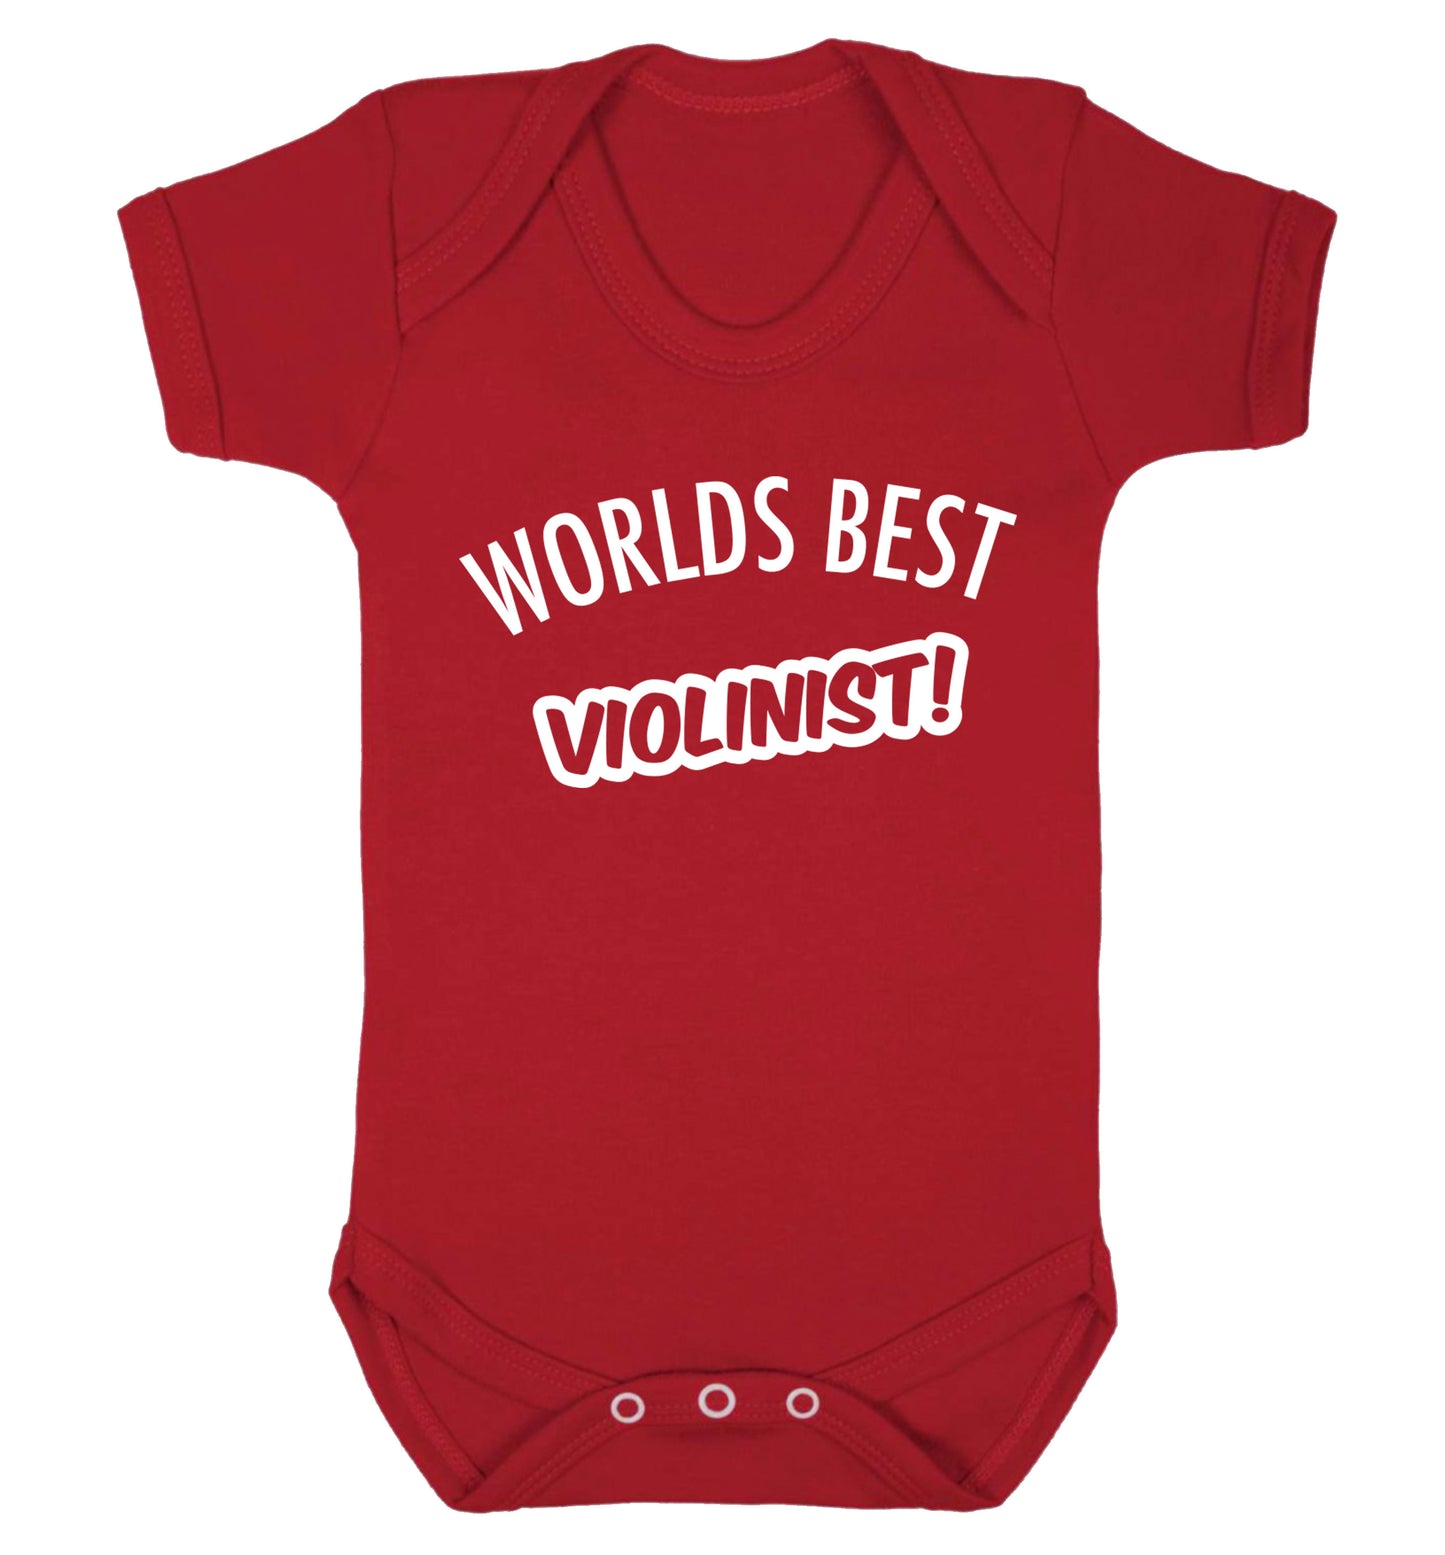 Worlds best violinist Baby Vest red 18-24 months